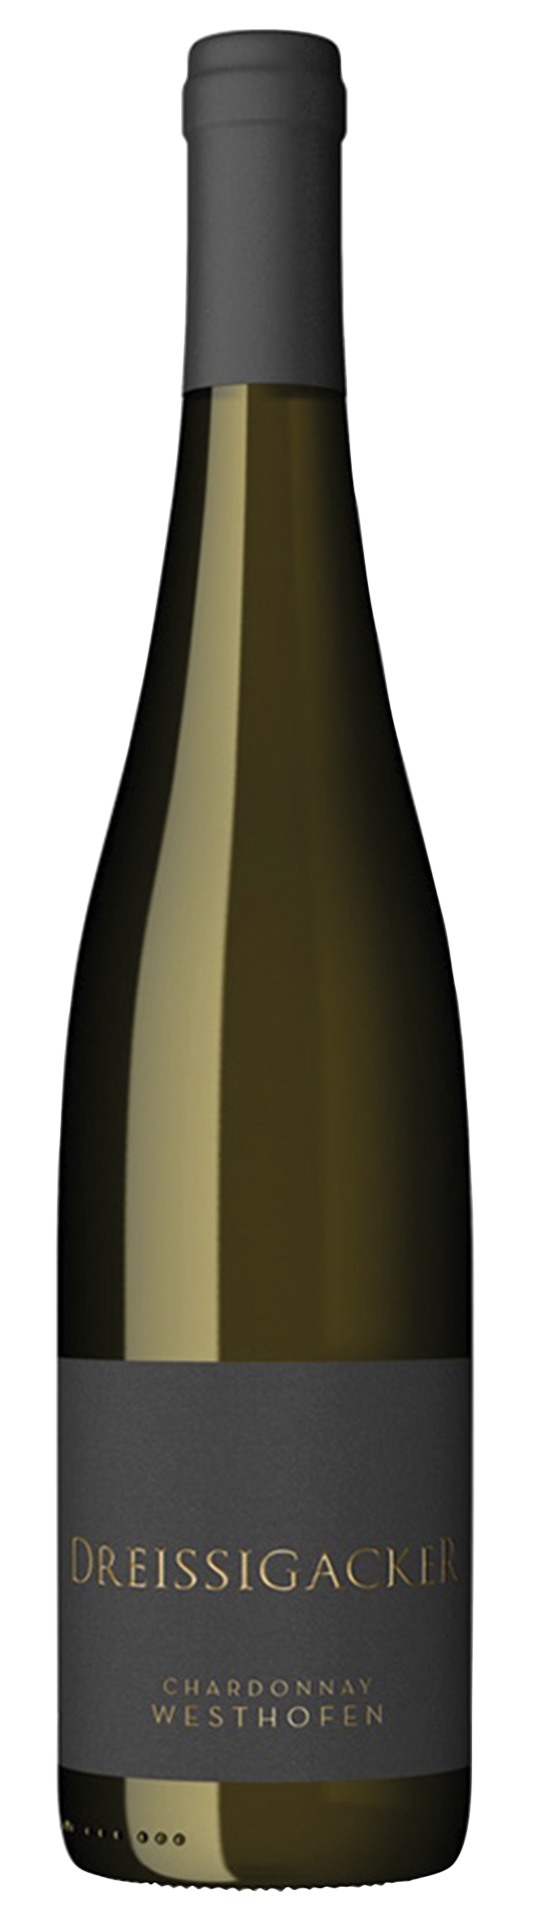 Westhofener Chardonnay  